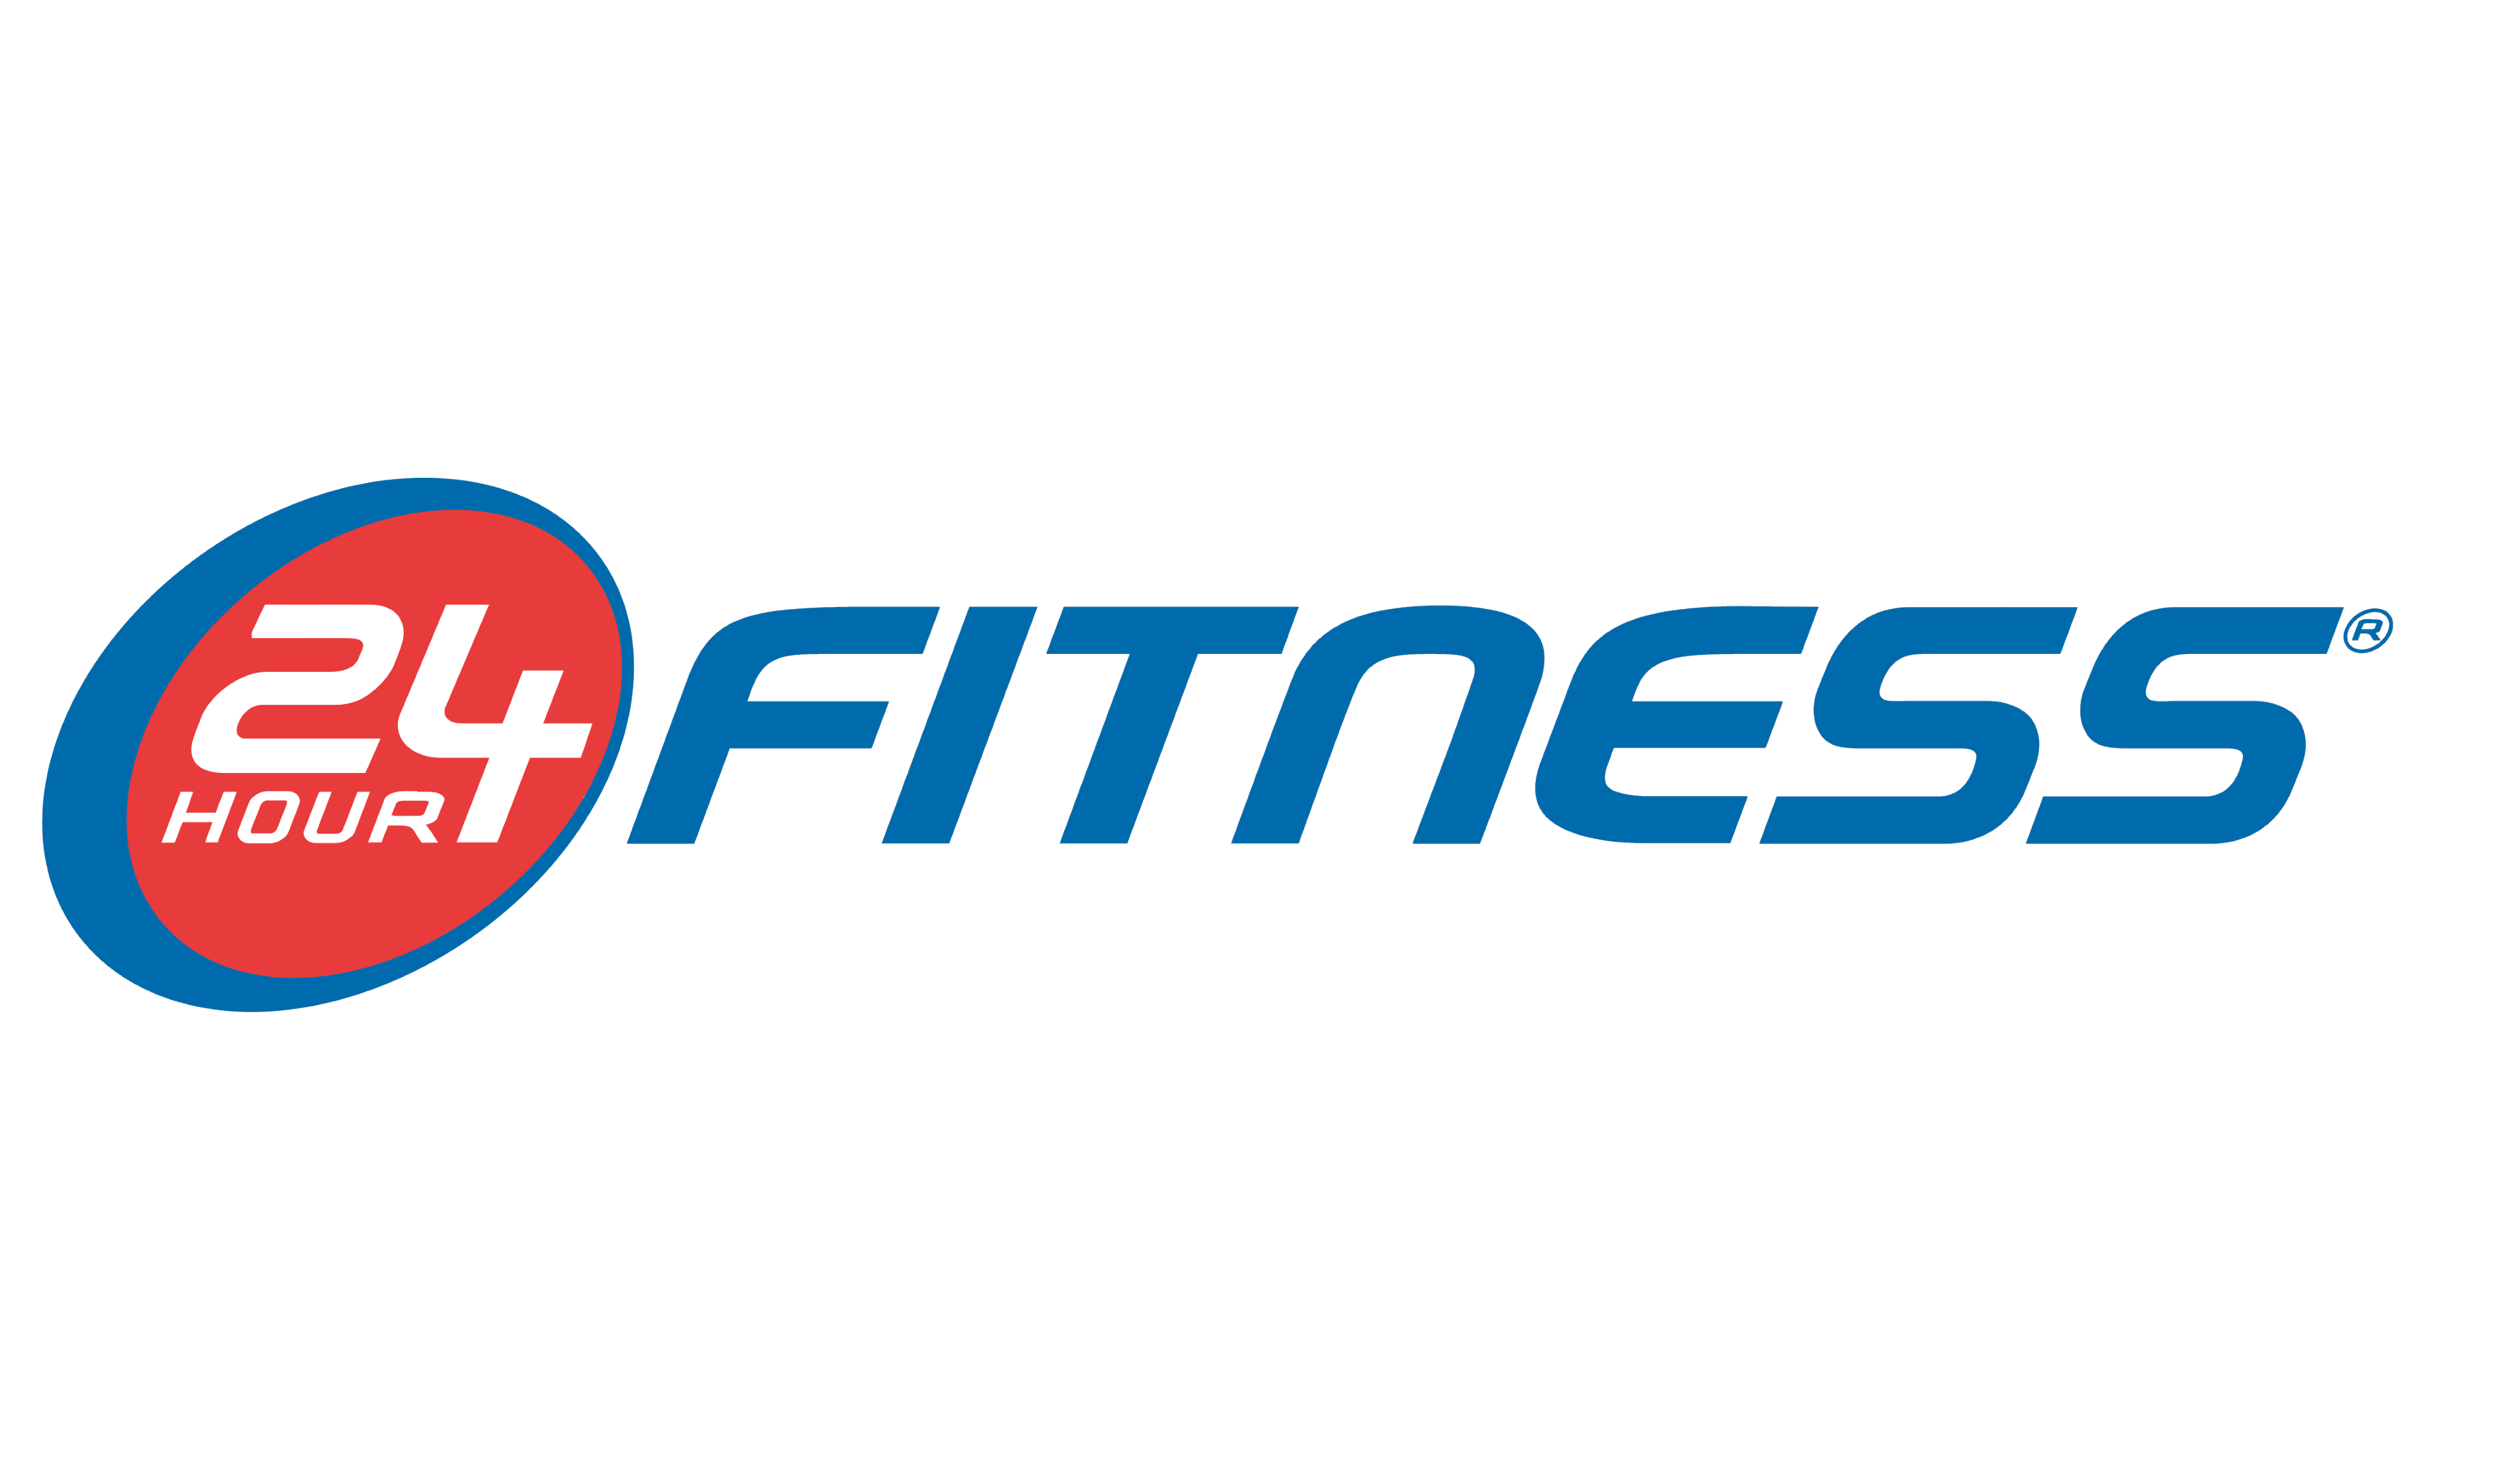 24-Hour-Fitness-logo